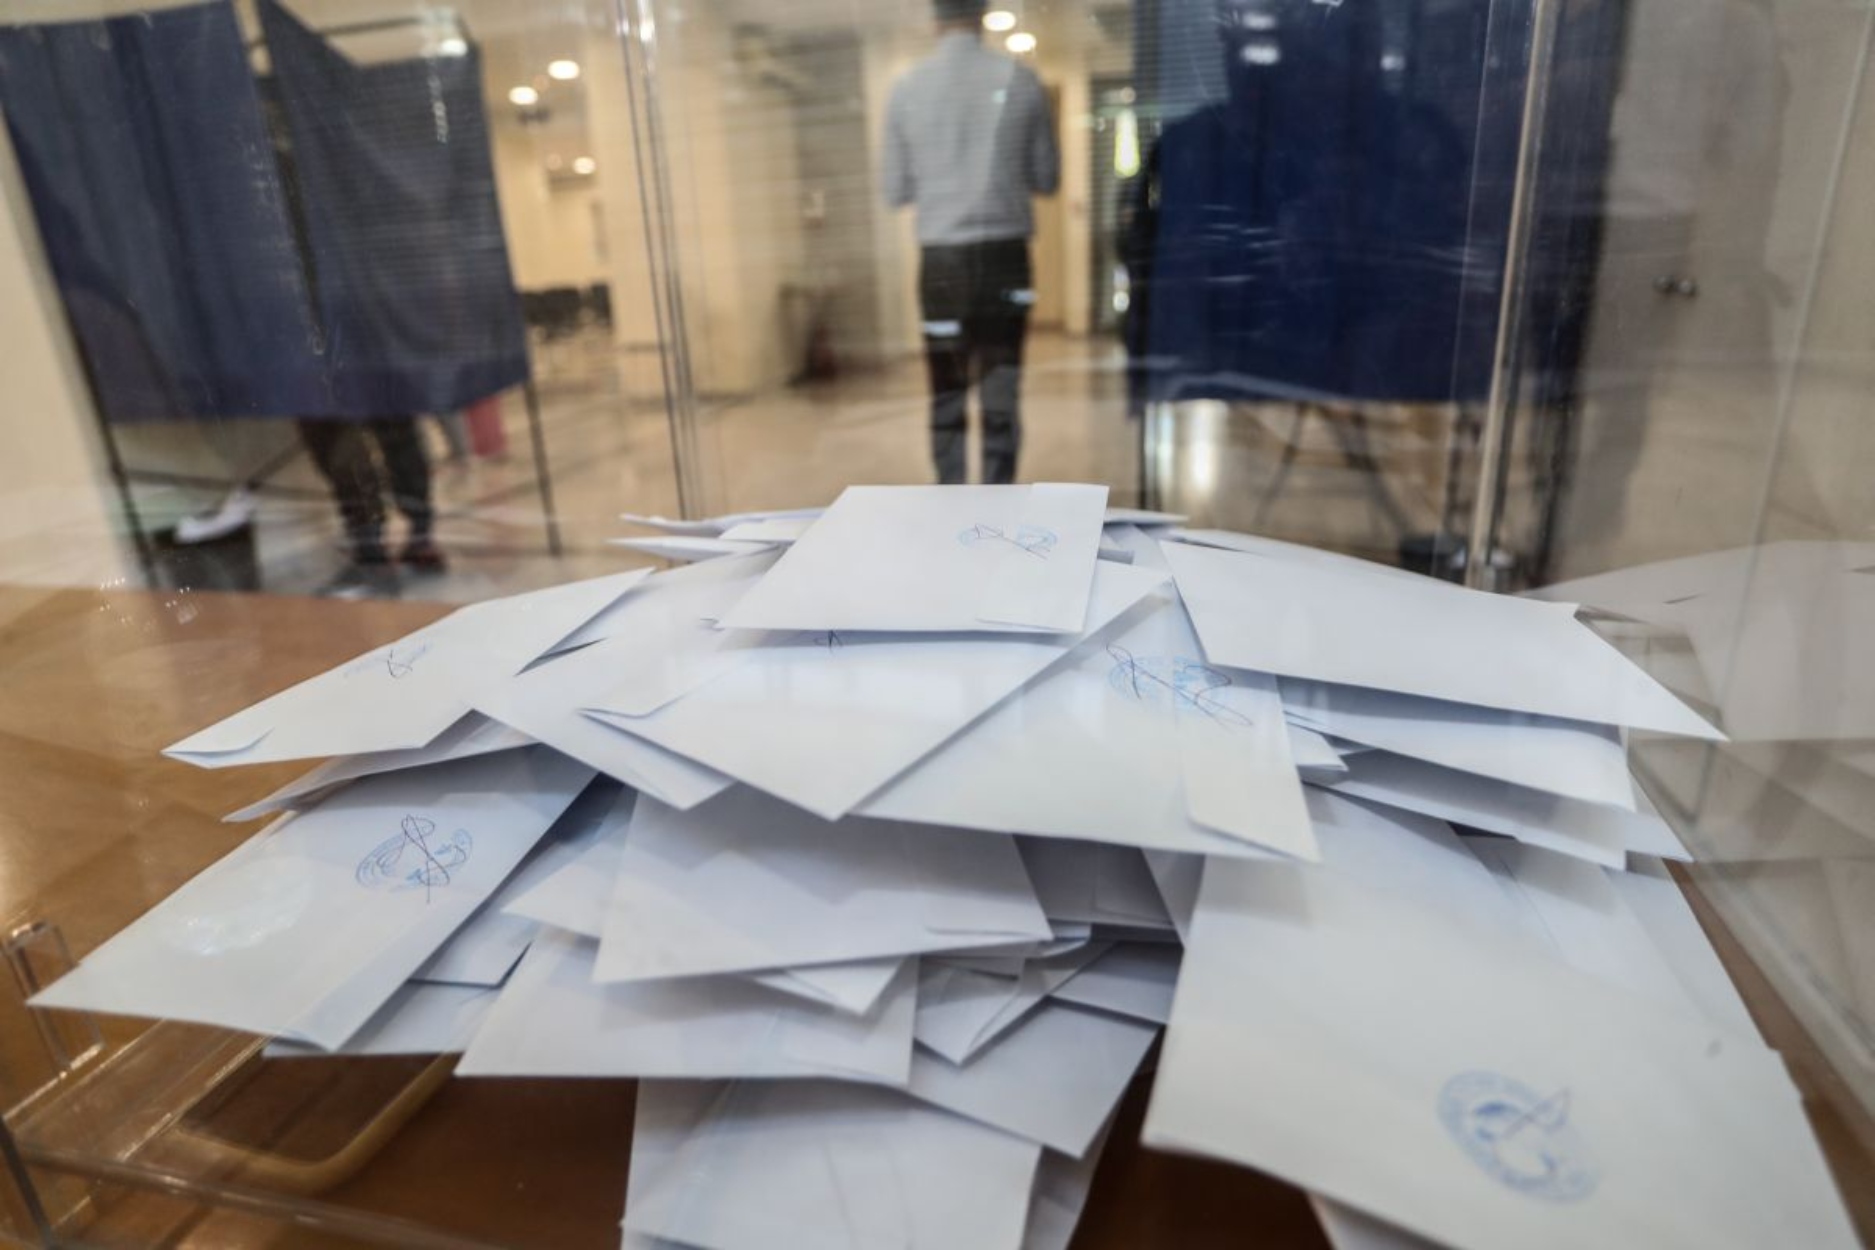 Θα μπορούσε η τραγωδία των Τεμπών να επηρεάσει την ημερομηνία διεξαγωγής των αυτοδιοικητικών εκλογών